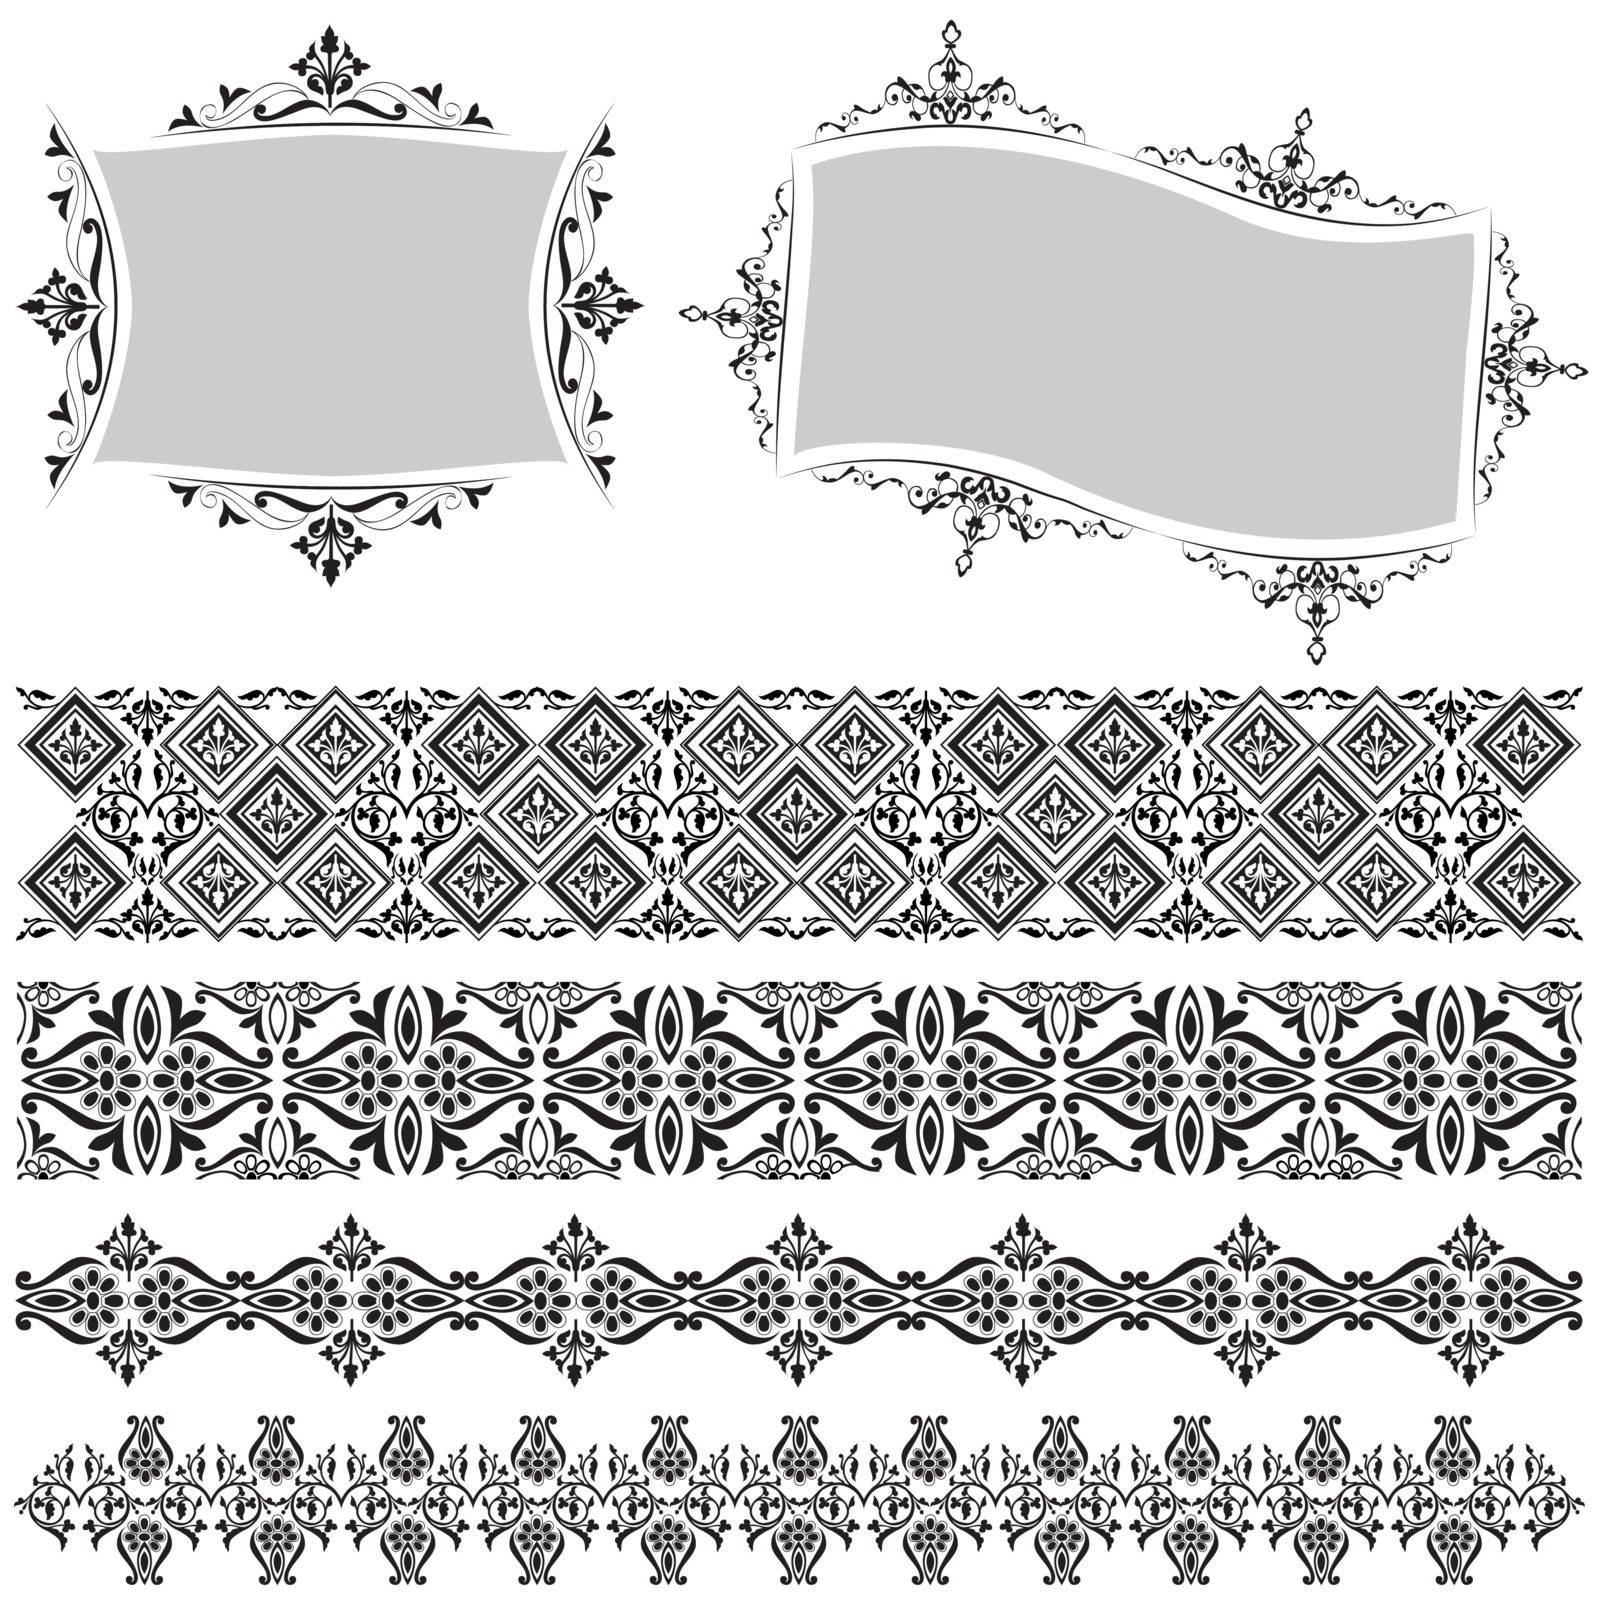 Elegant Floral Design Elements, editable vector illustration